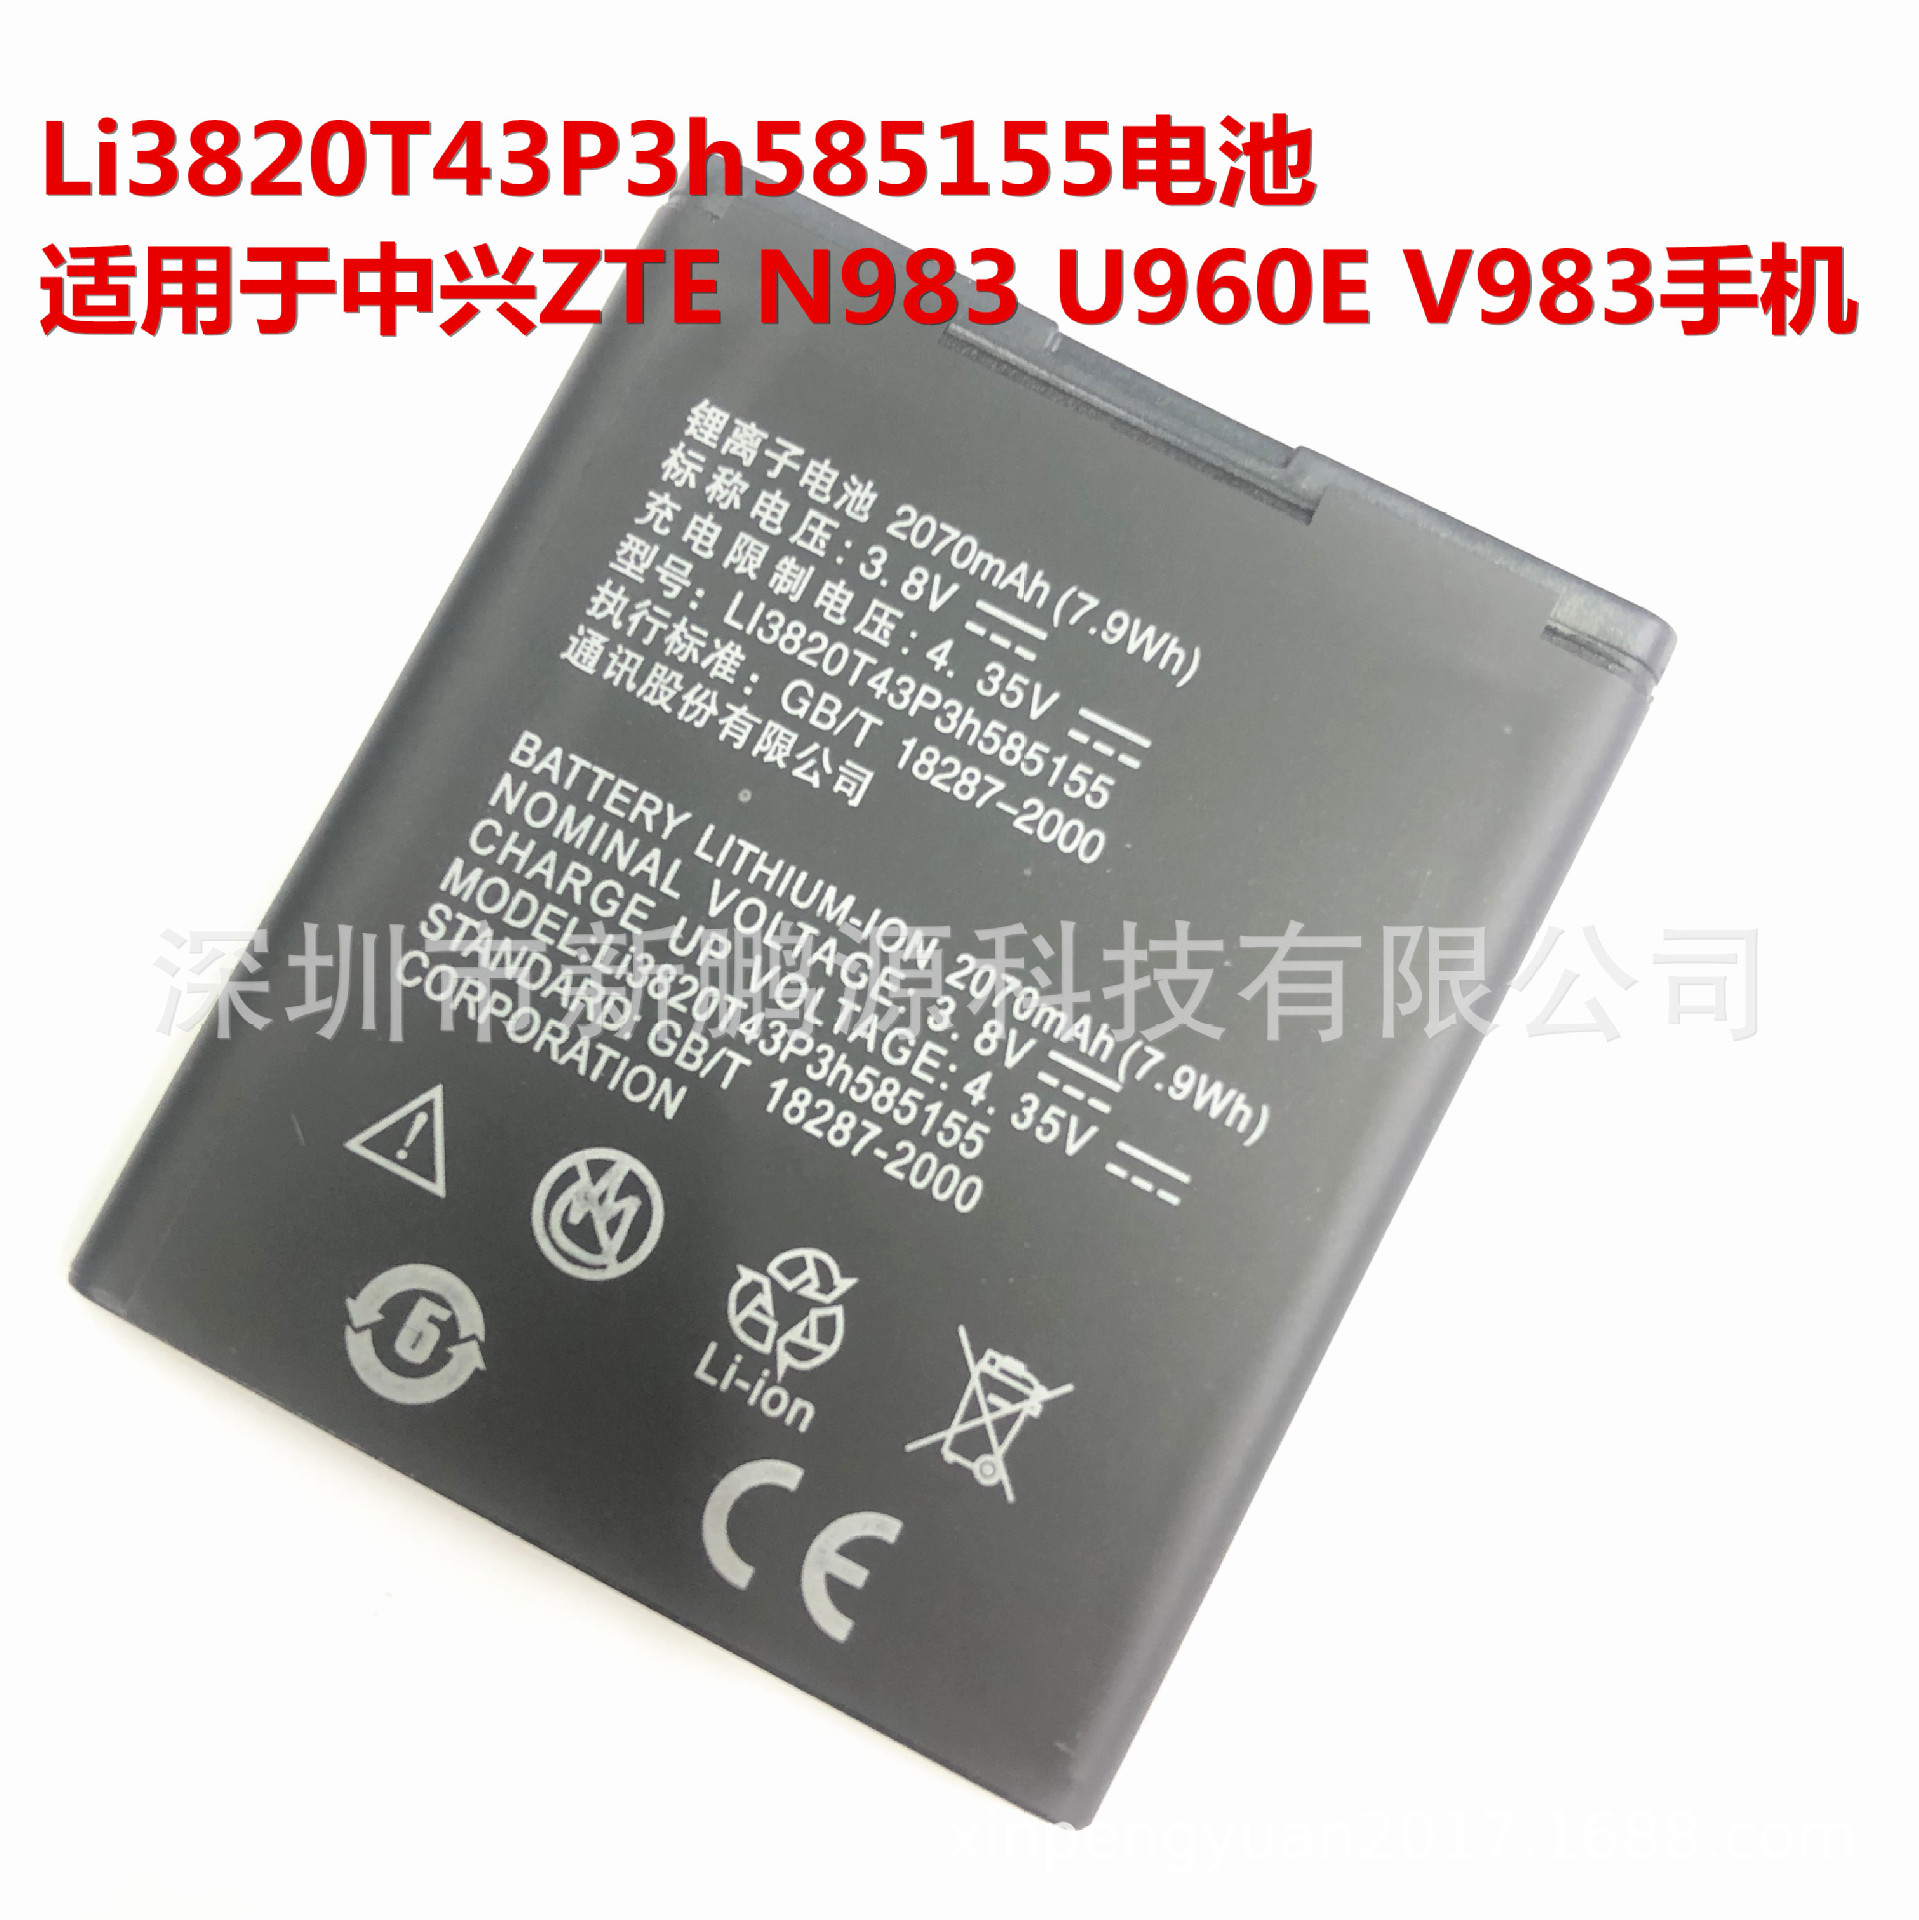 Li3820T43P3h585155适用于中兴ZTE N983 U960E V983手机更换电池